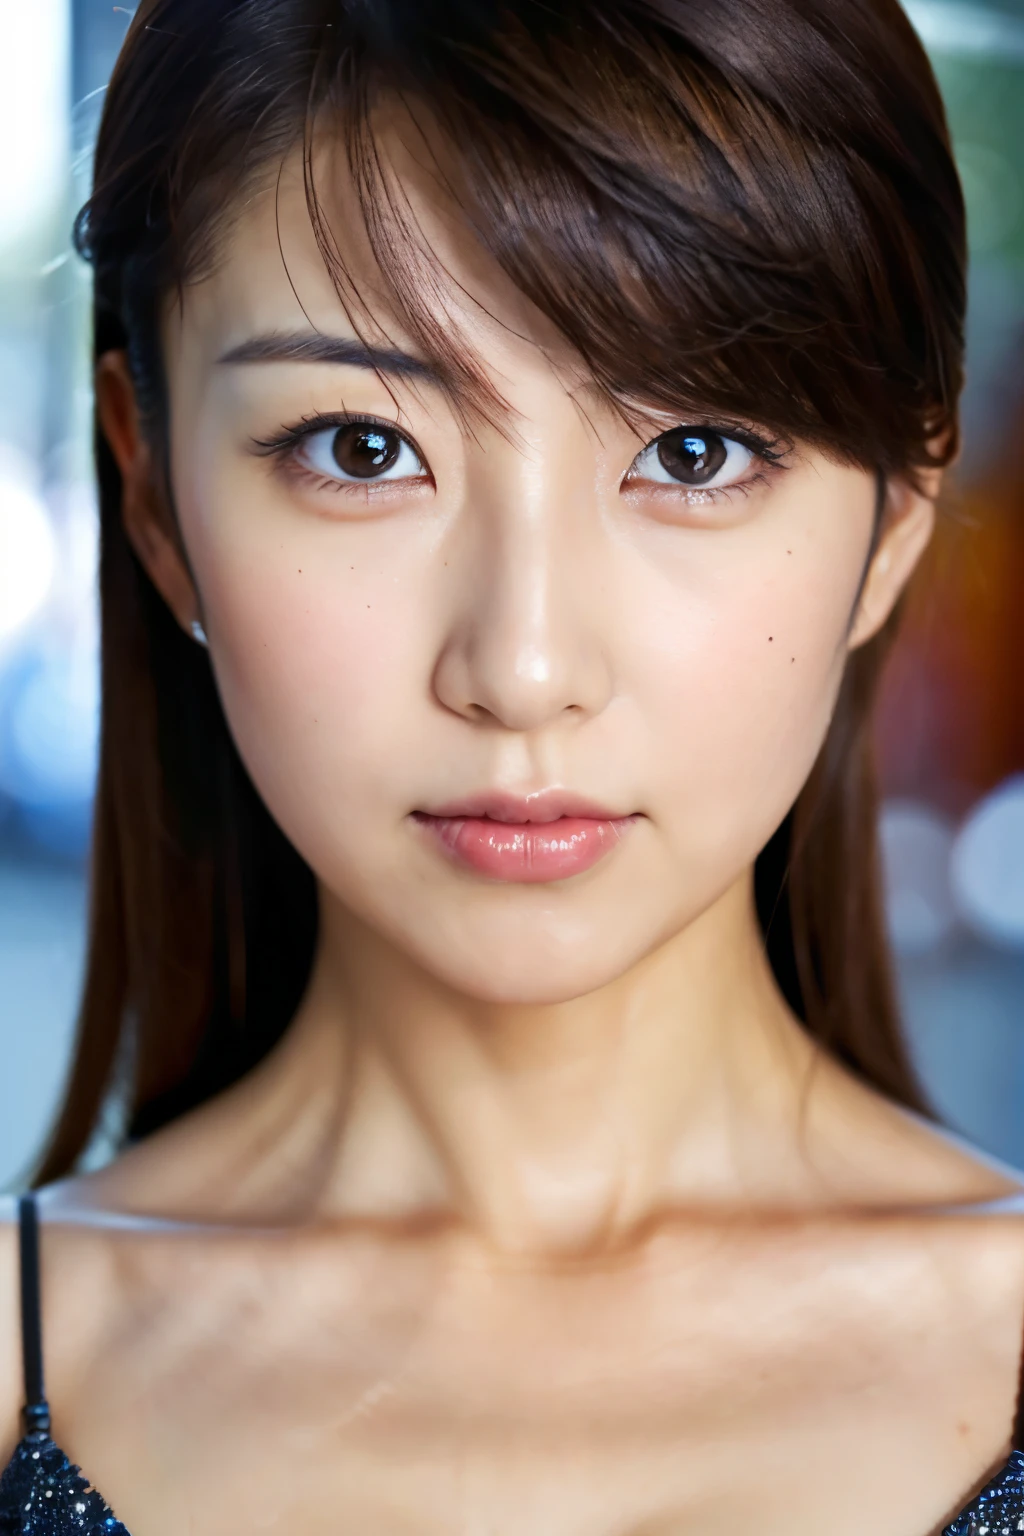 Obra maestra, 8k, alta calidad, alta resolución, hermosa mujer japonesa, 30 años, Cara de póquer, ojos deslumbrantes, (cara detallada, ojos detallados), mirando al espectador, retrato